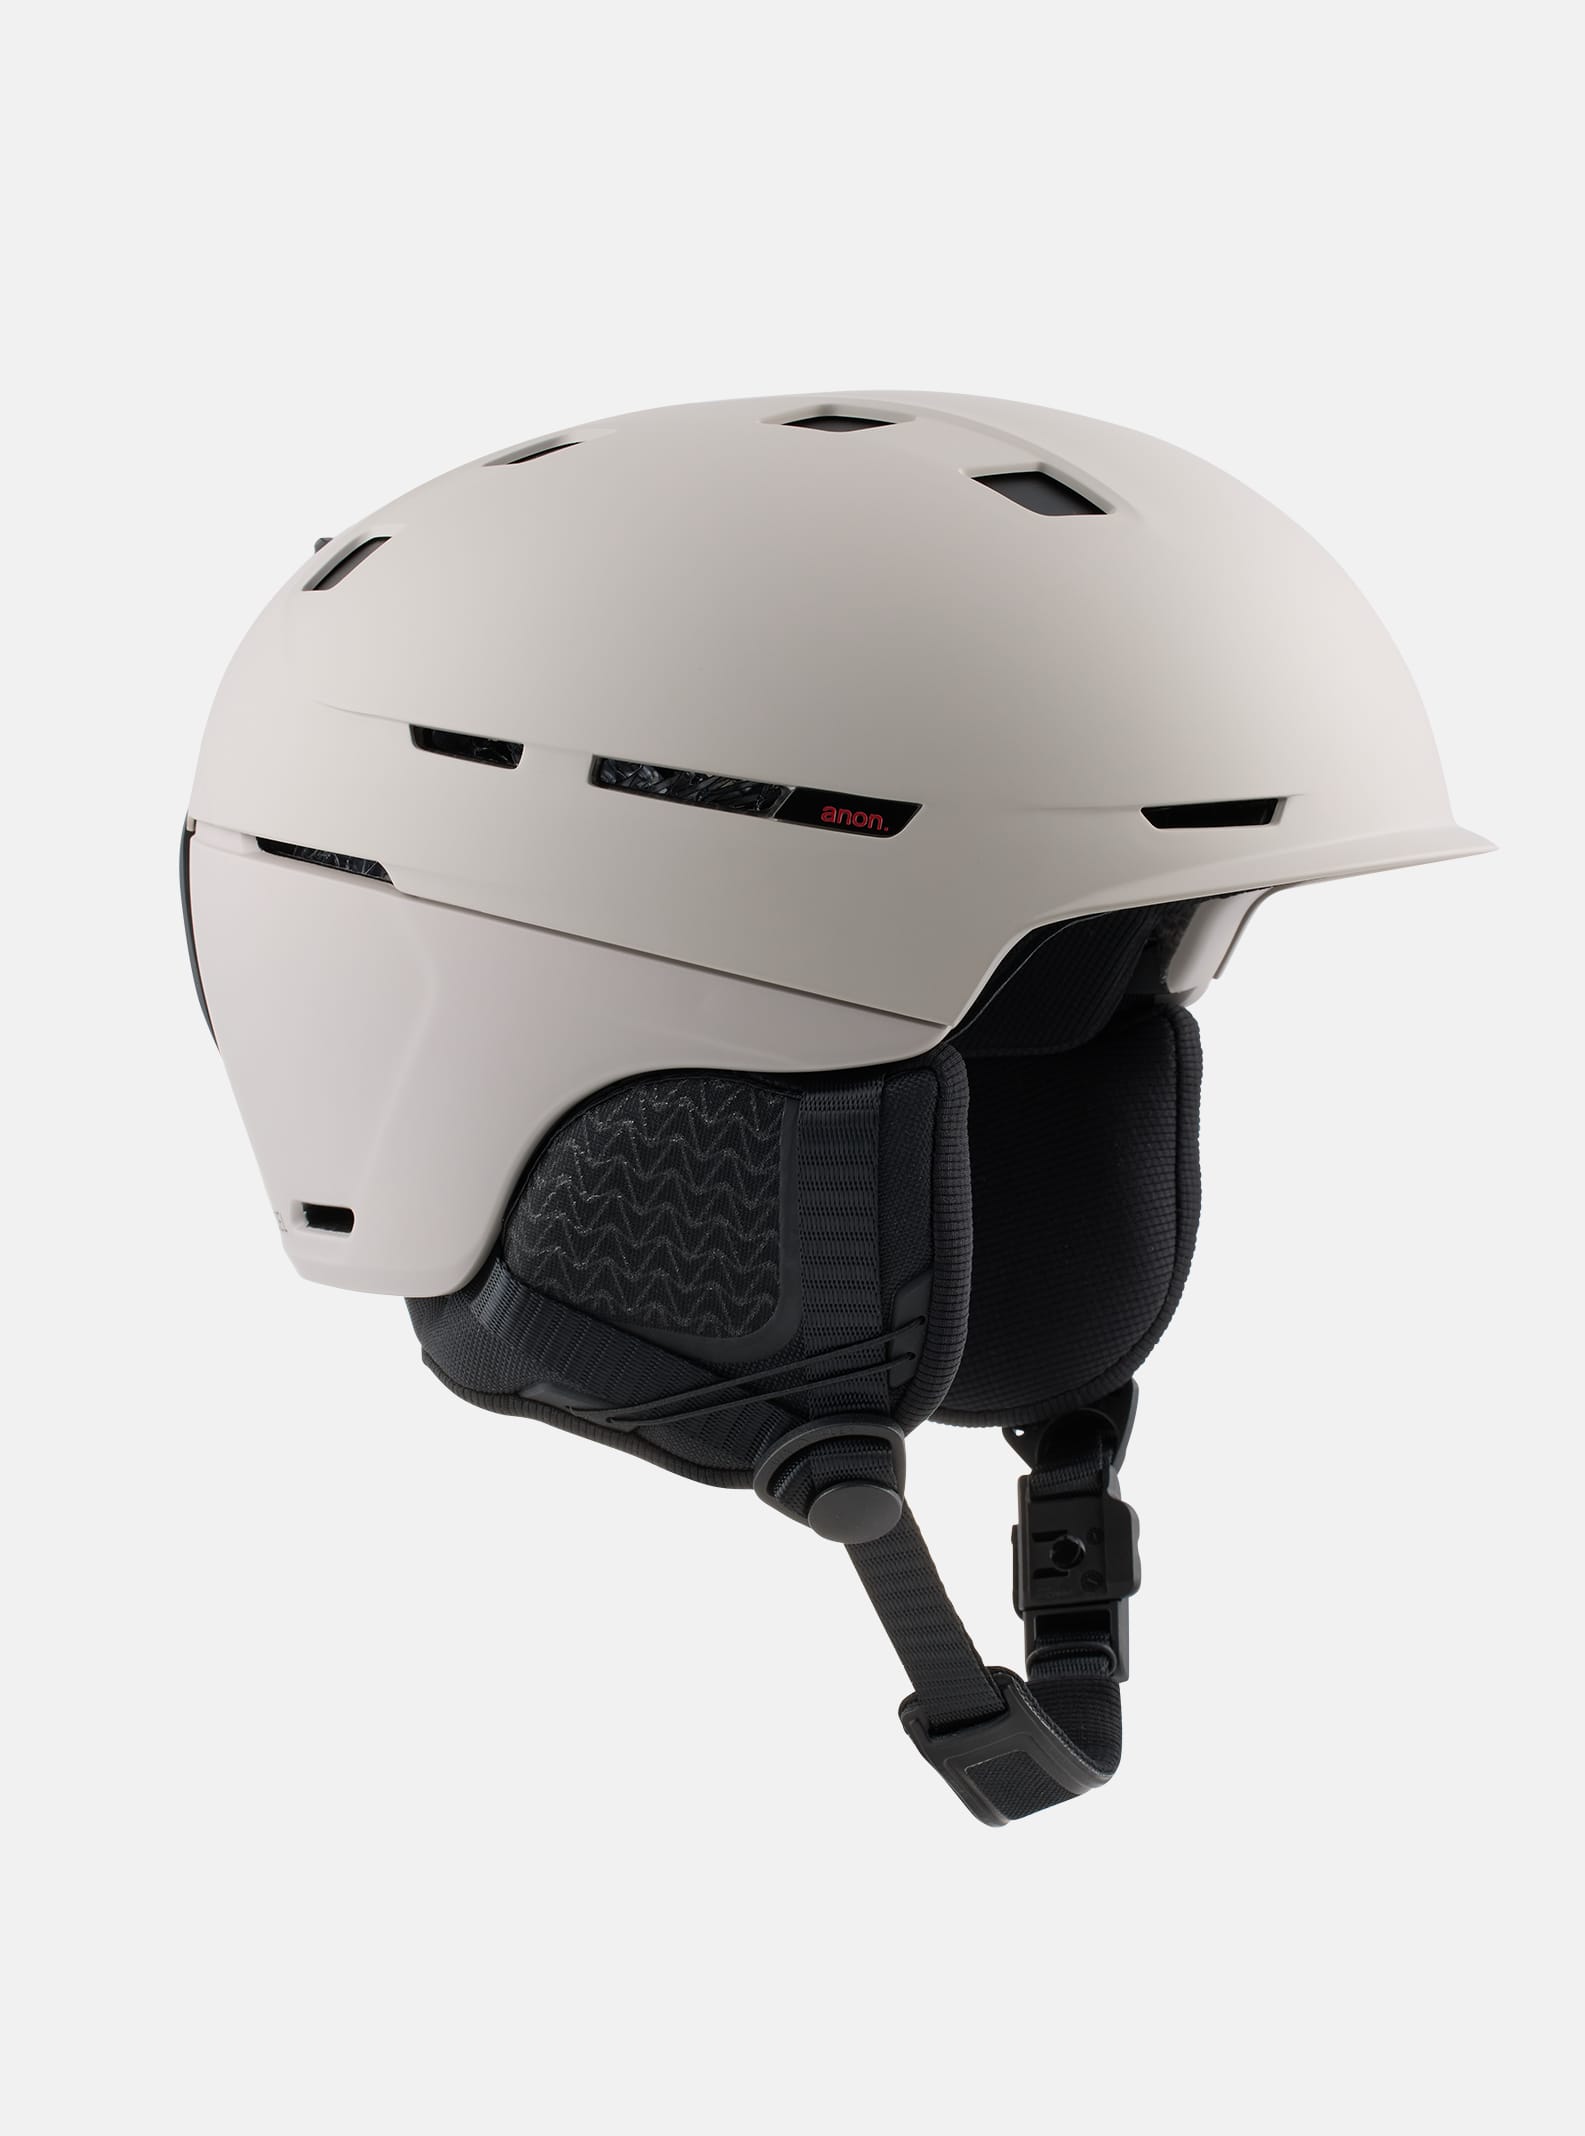 Anon Merak WaveCel スキー&スノーボード ヘルメット | Anon Optics 